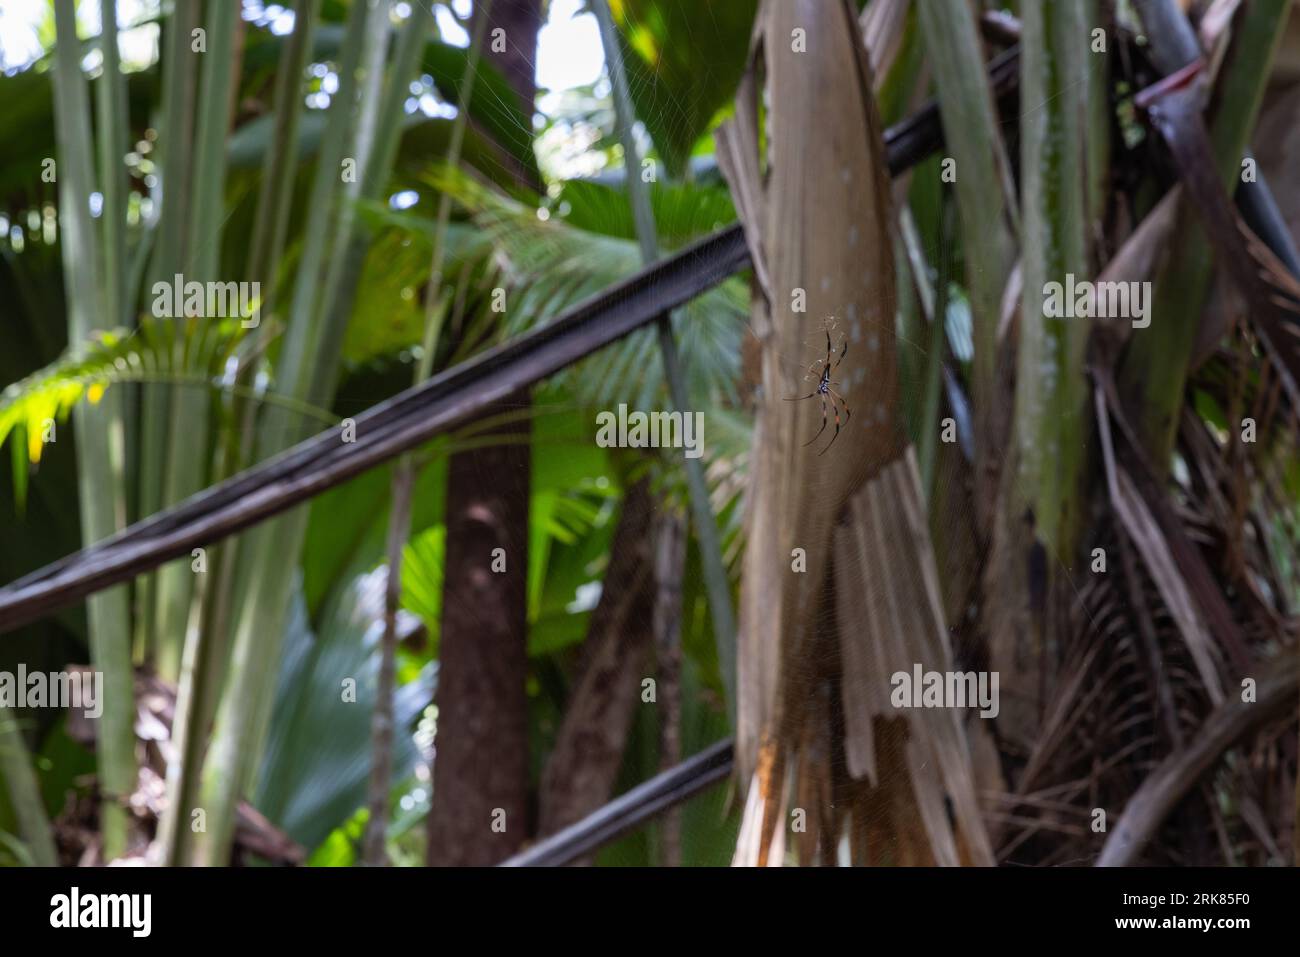 Il ragno tessitore a orlo dorato con zampe rosse è una ragnatela di cobweb nella foresta tropicale. Nephila inaurata. Si tratta di un grande ragno della famiglia Nephilidae Foto Stock